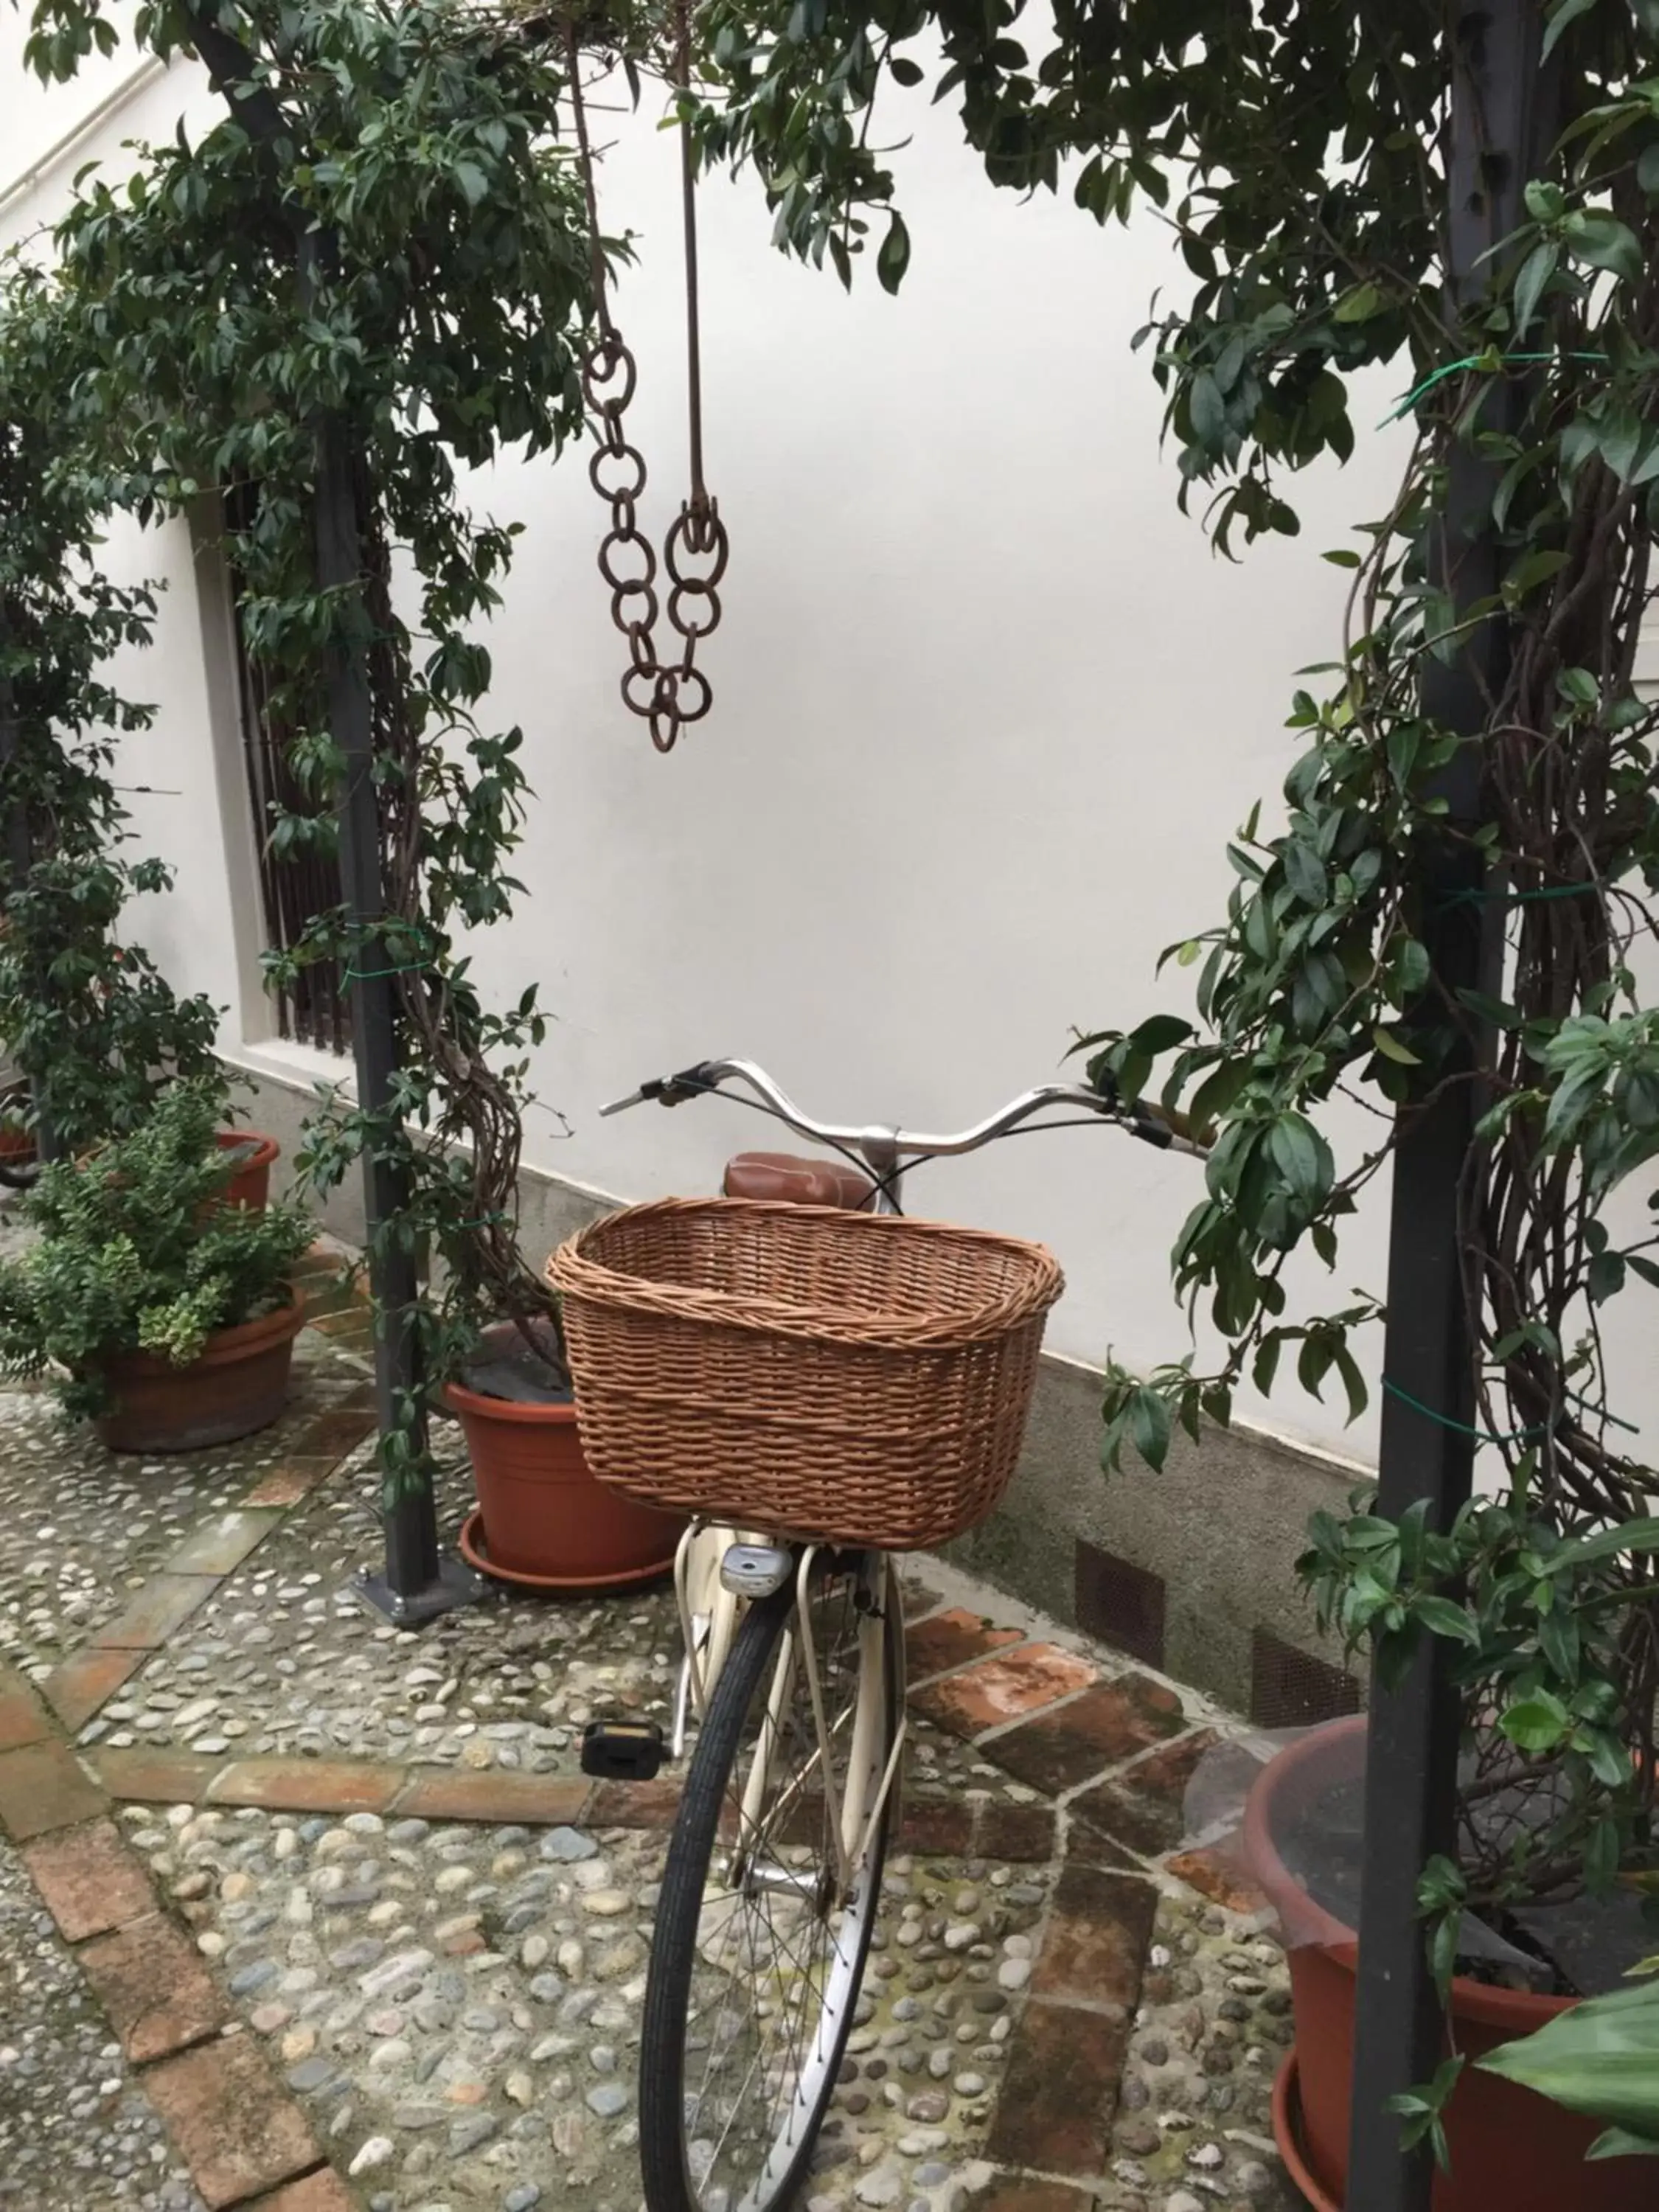 Cycling in Il Giardino Segreto